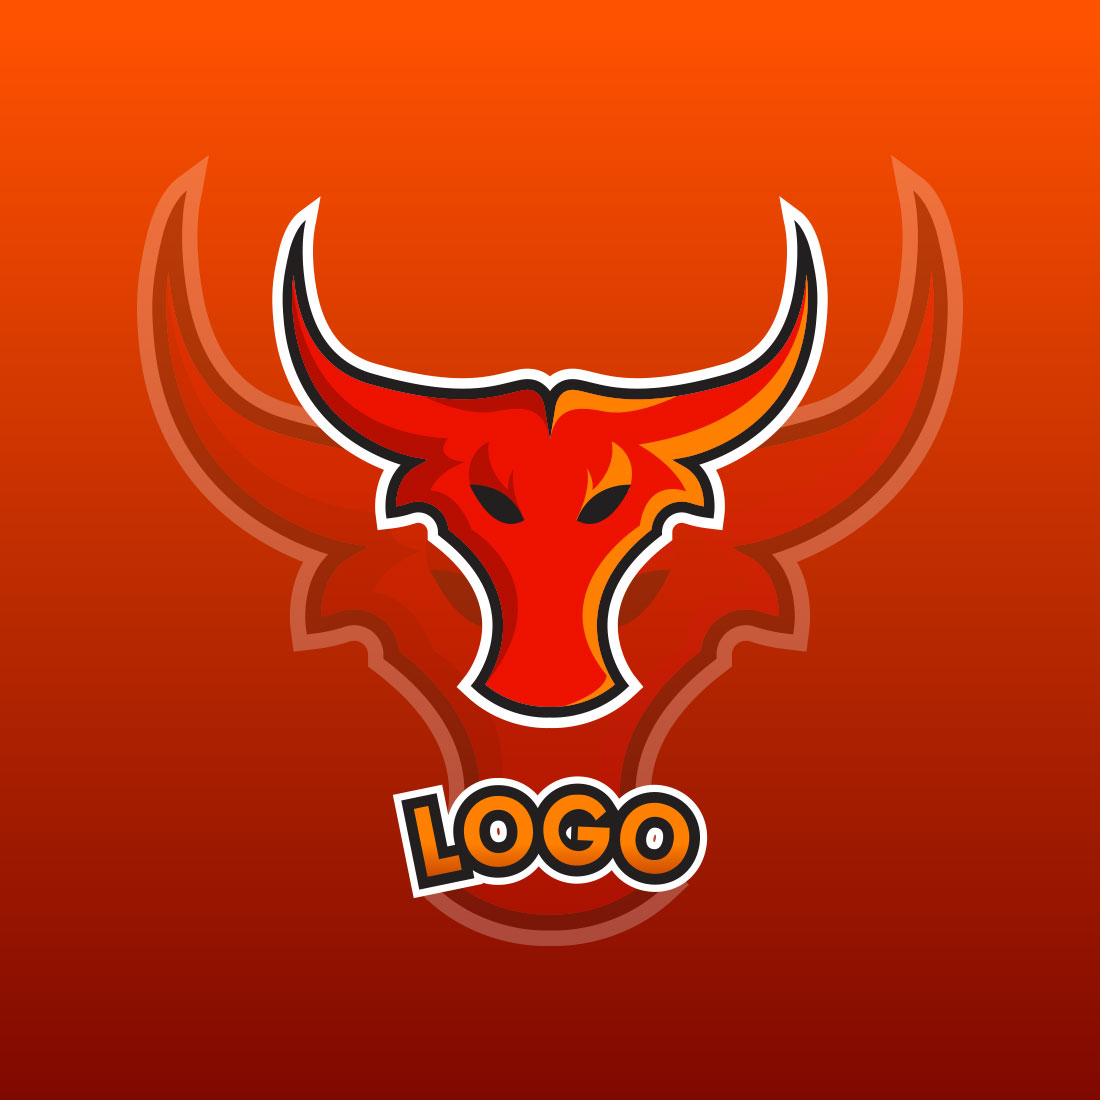 Bull Character Mascot Gaming Logo Set cover image.